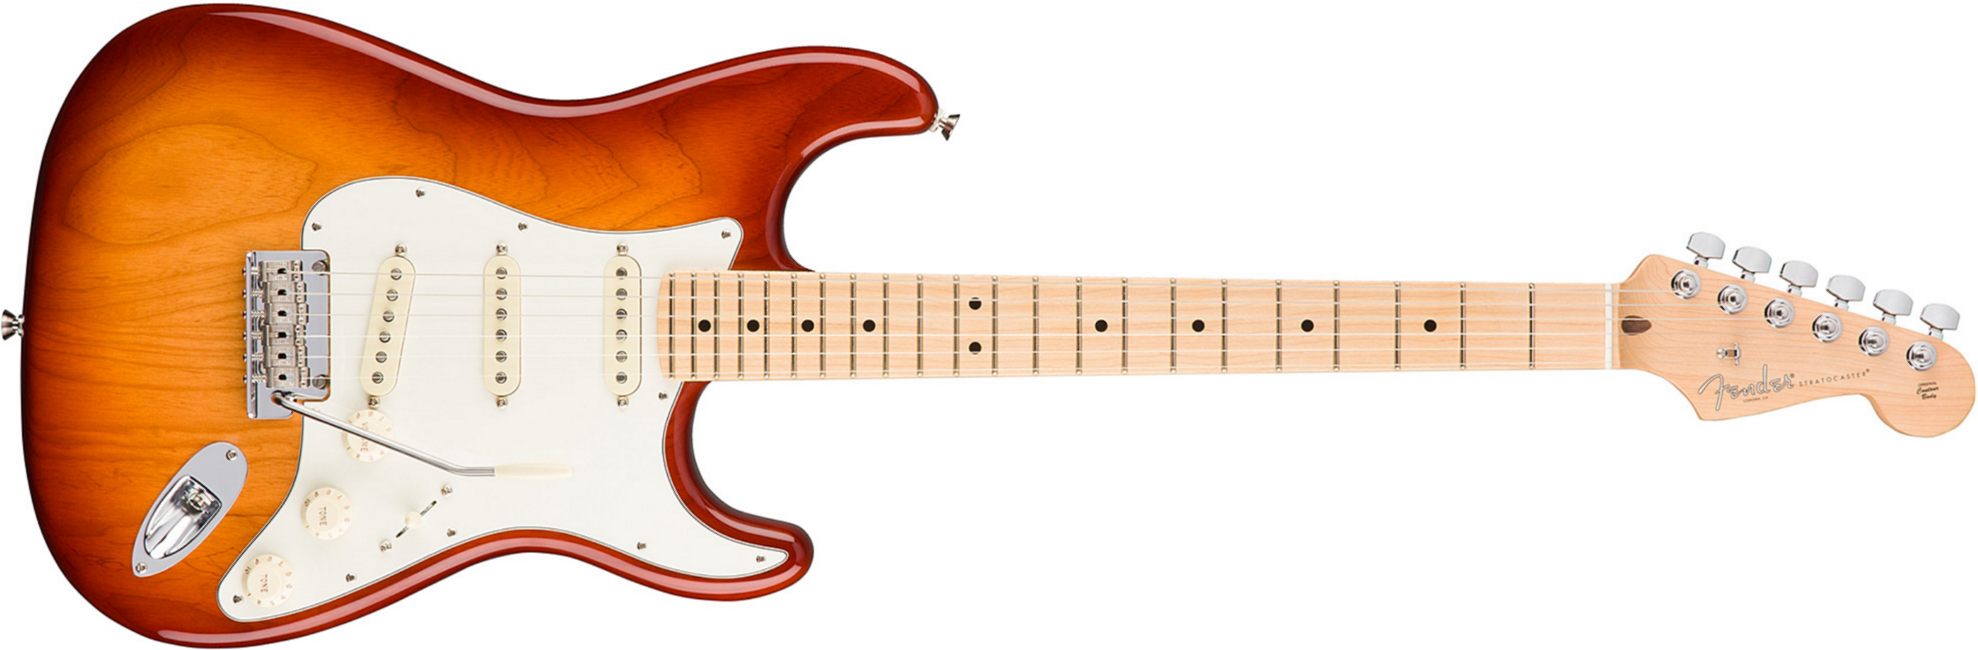 Fender Strat American Professional 2017 3s Usa Mn - Sienna Sunburst - Elektrische gitaar in Str-vorm - Main picture